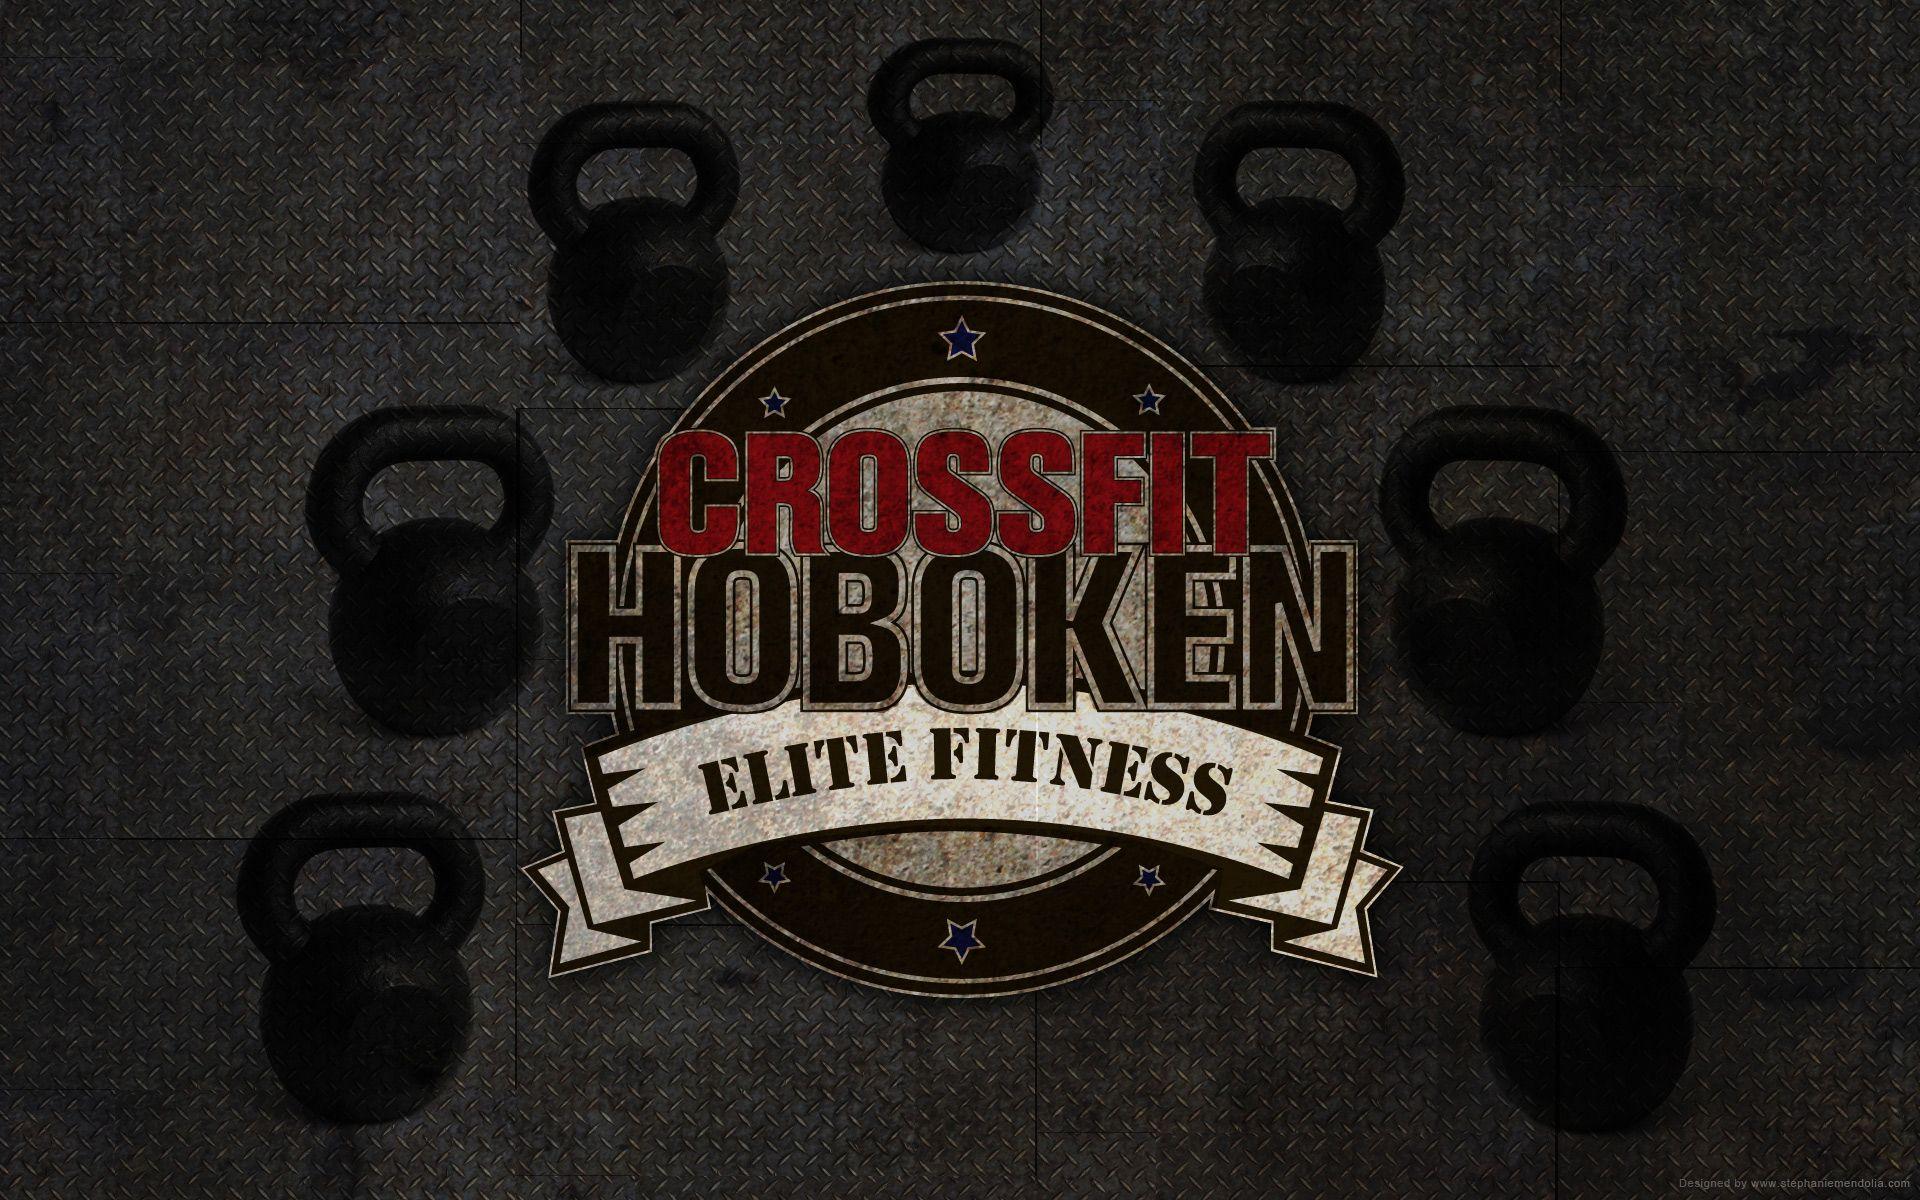 Crossfit Hoboken Facebook